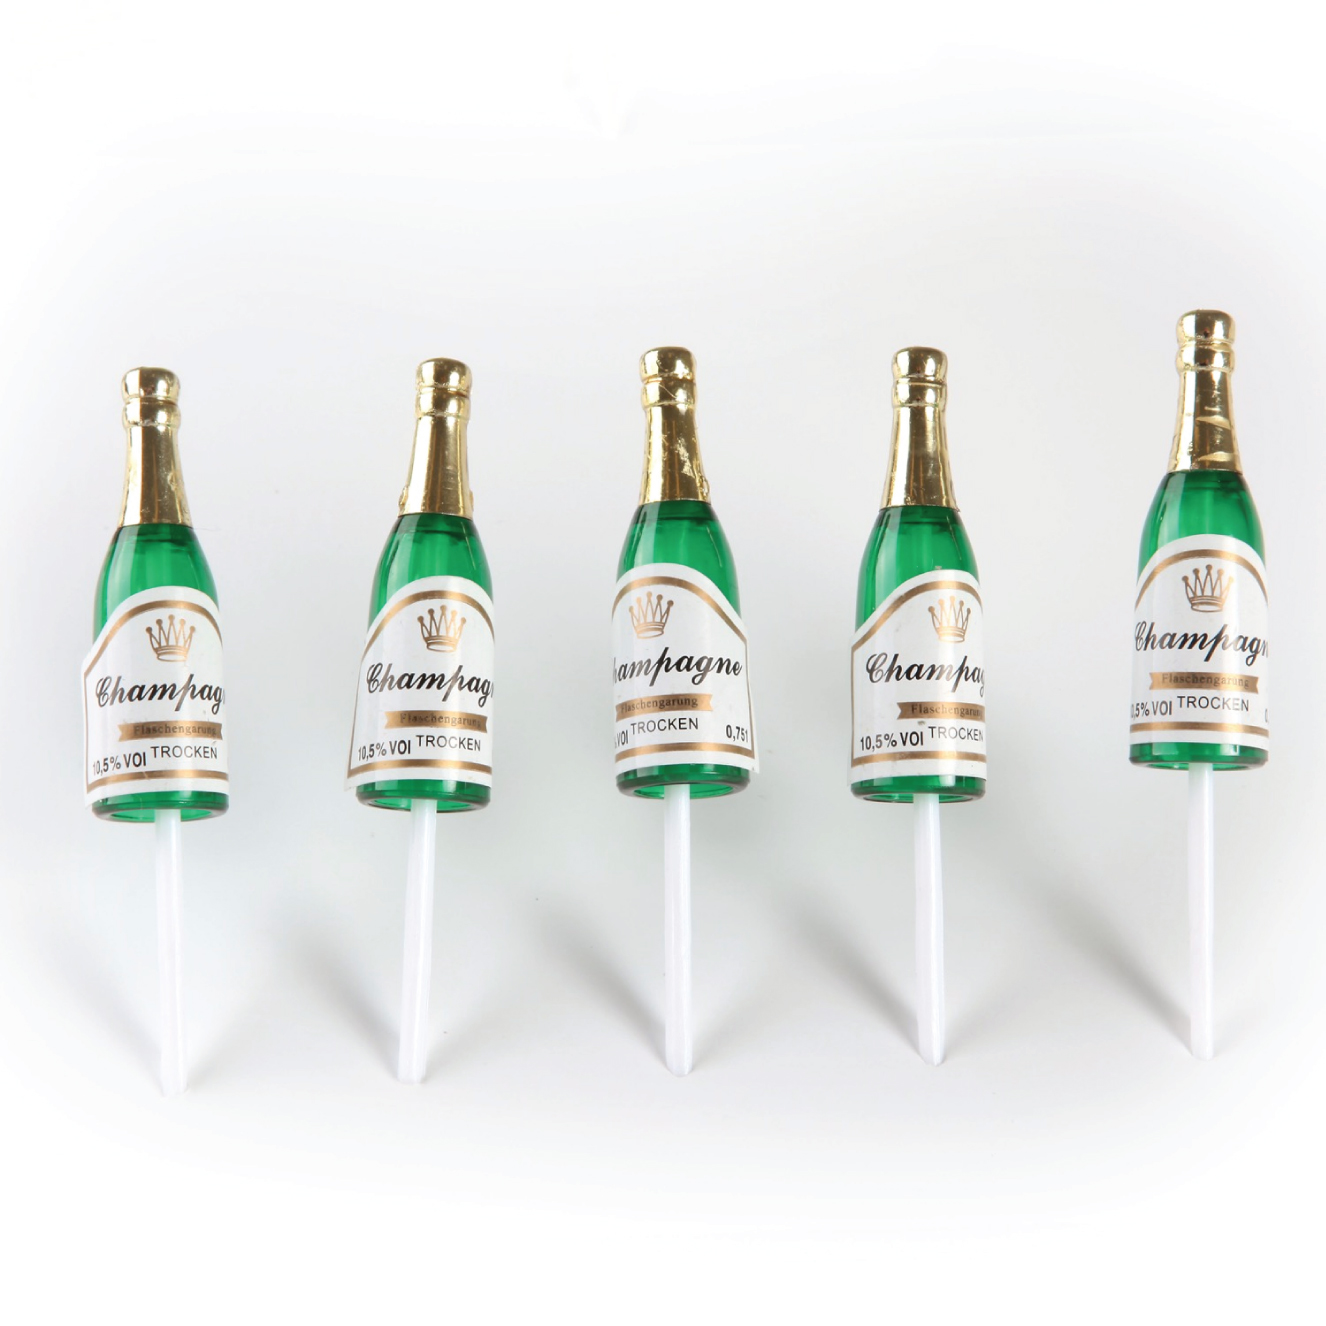 Mening Weigeren Open Champagne Flesjes Klein - Online bestellen - Trend Decor